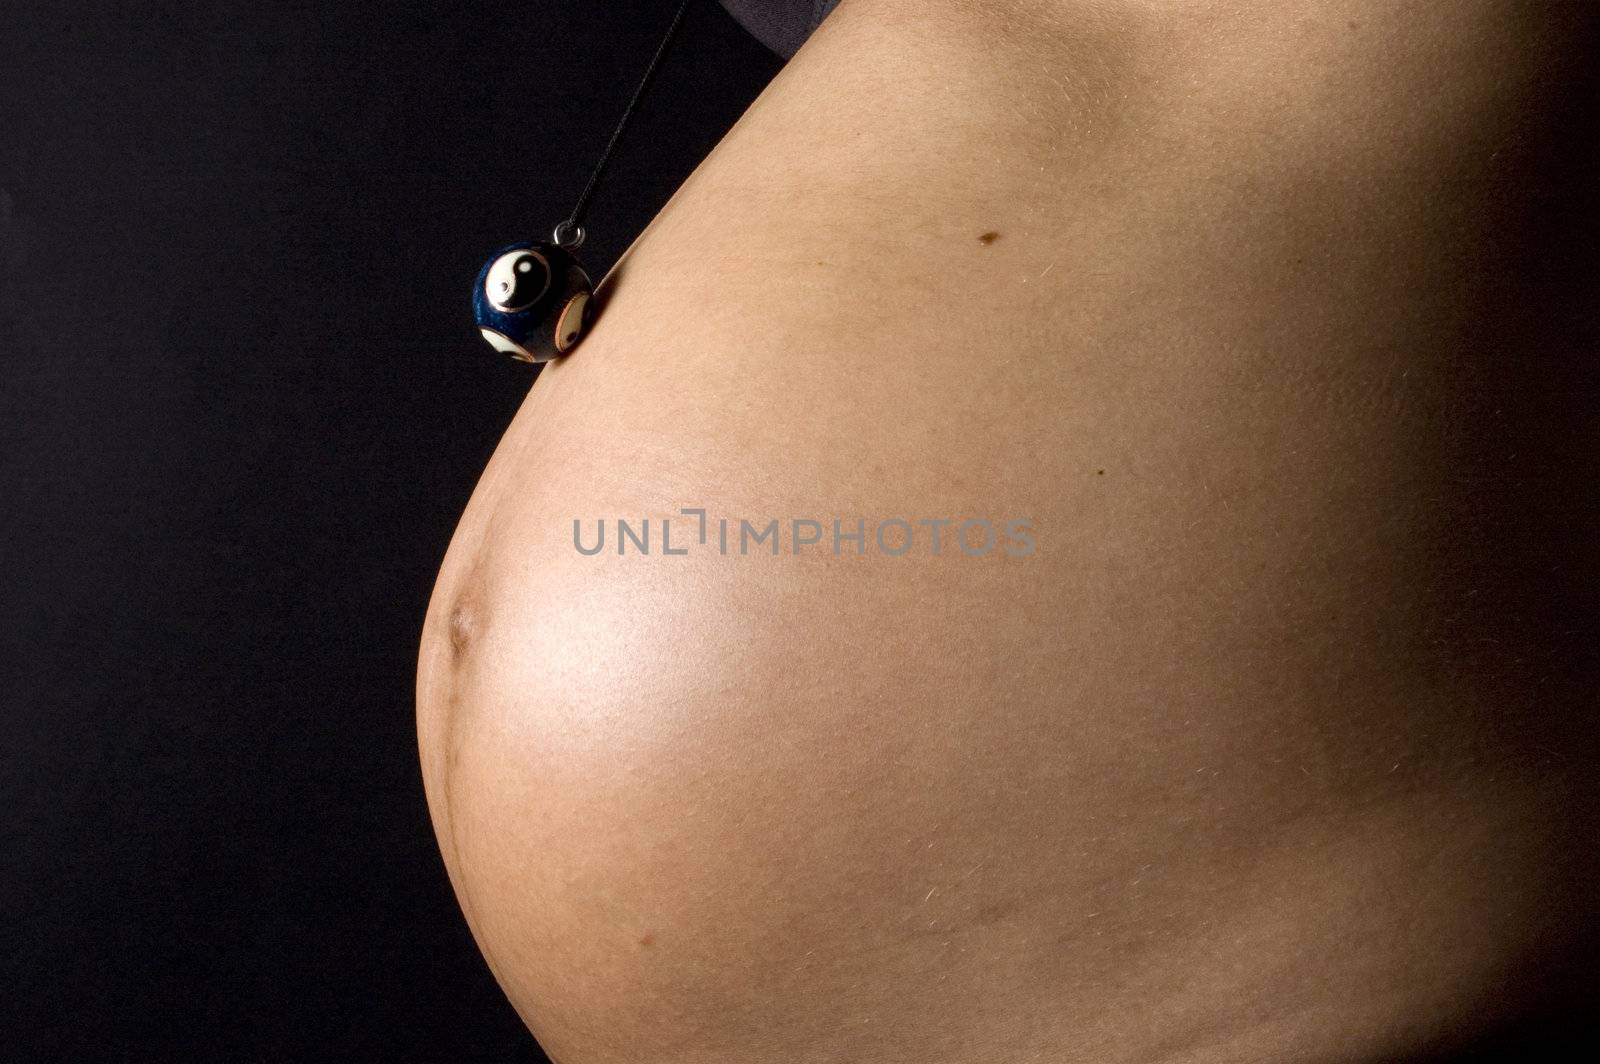 30 weeks pregnant teenager by ladyminnie